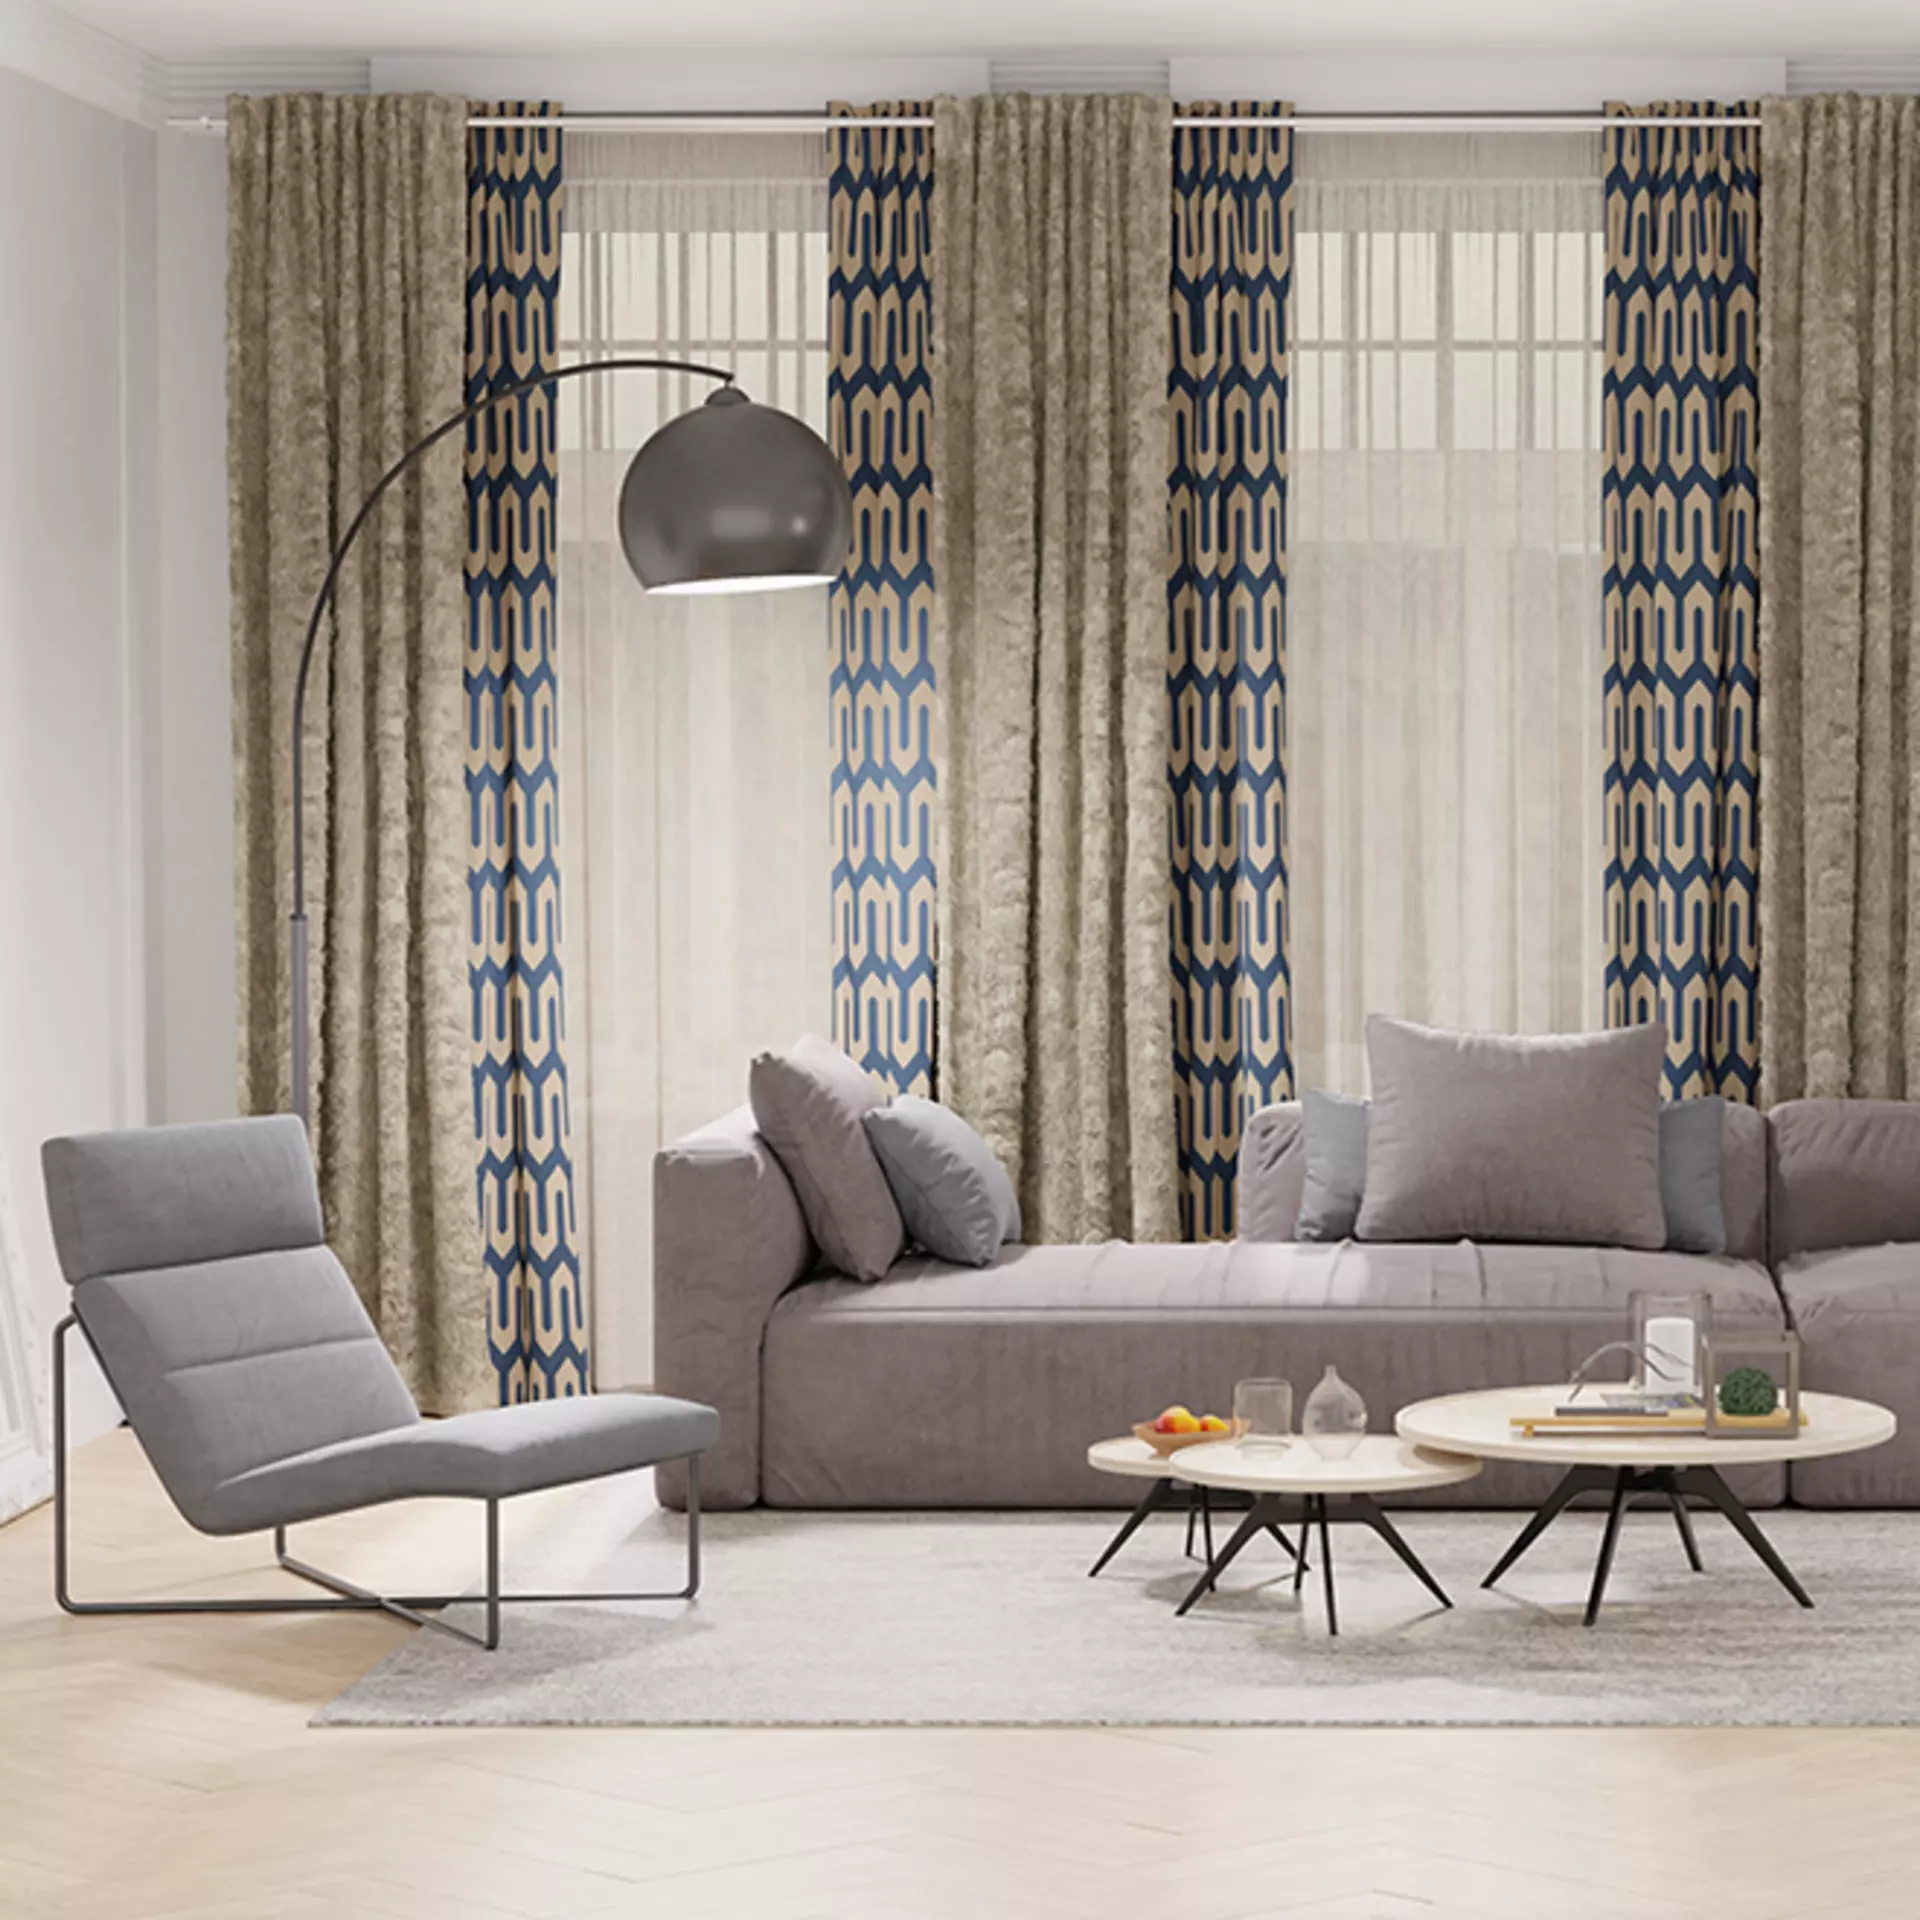 Wohnzimmer mit Vorhangschals , Polstermöbeln und Couchtischen im Mid Century Modern Stil